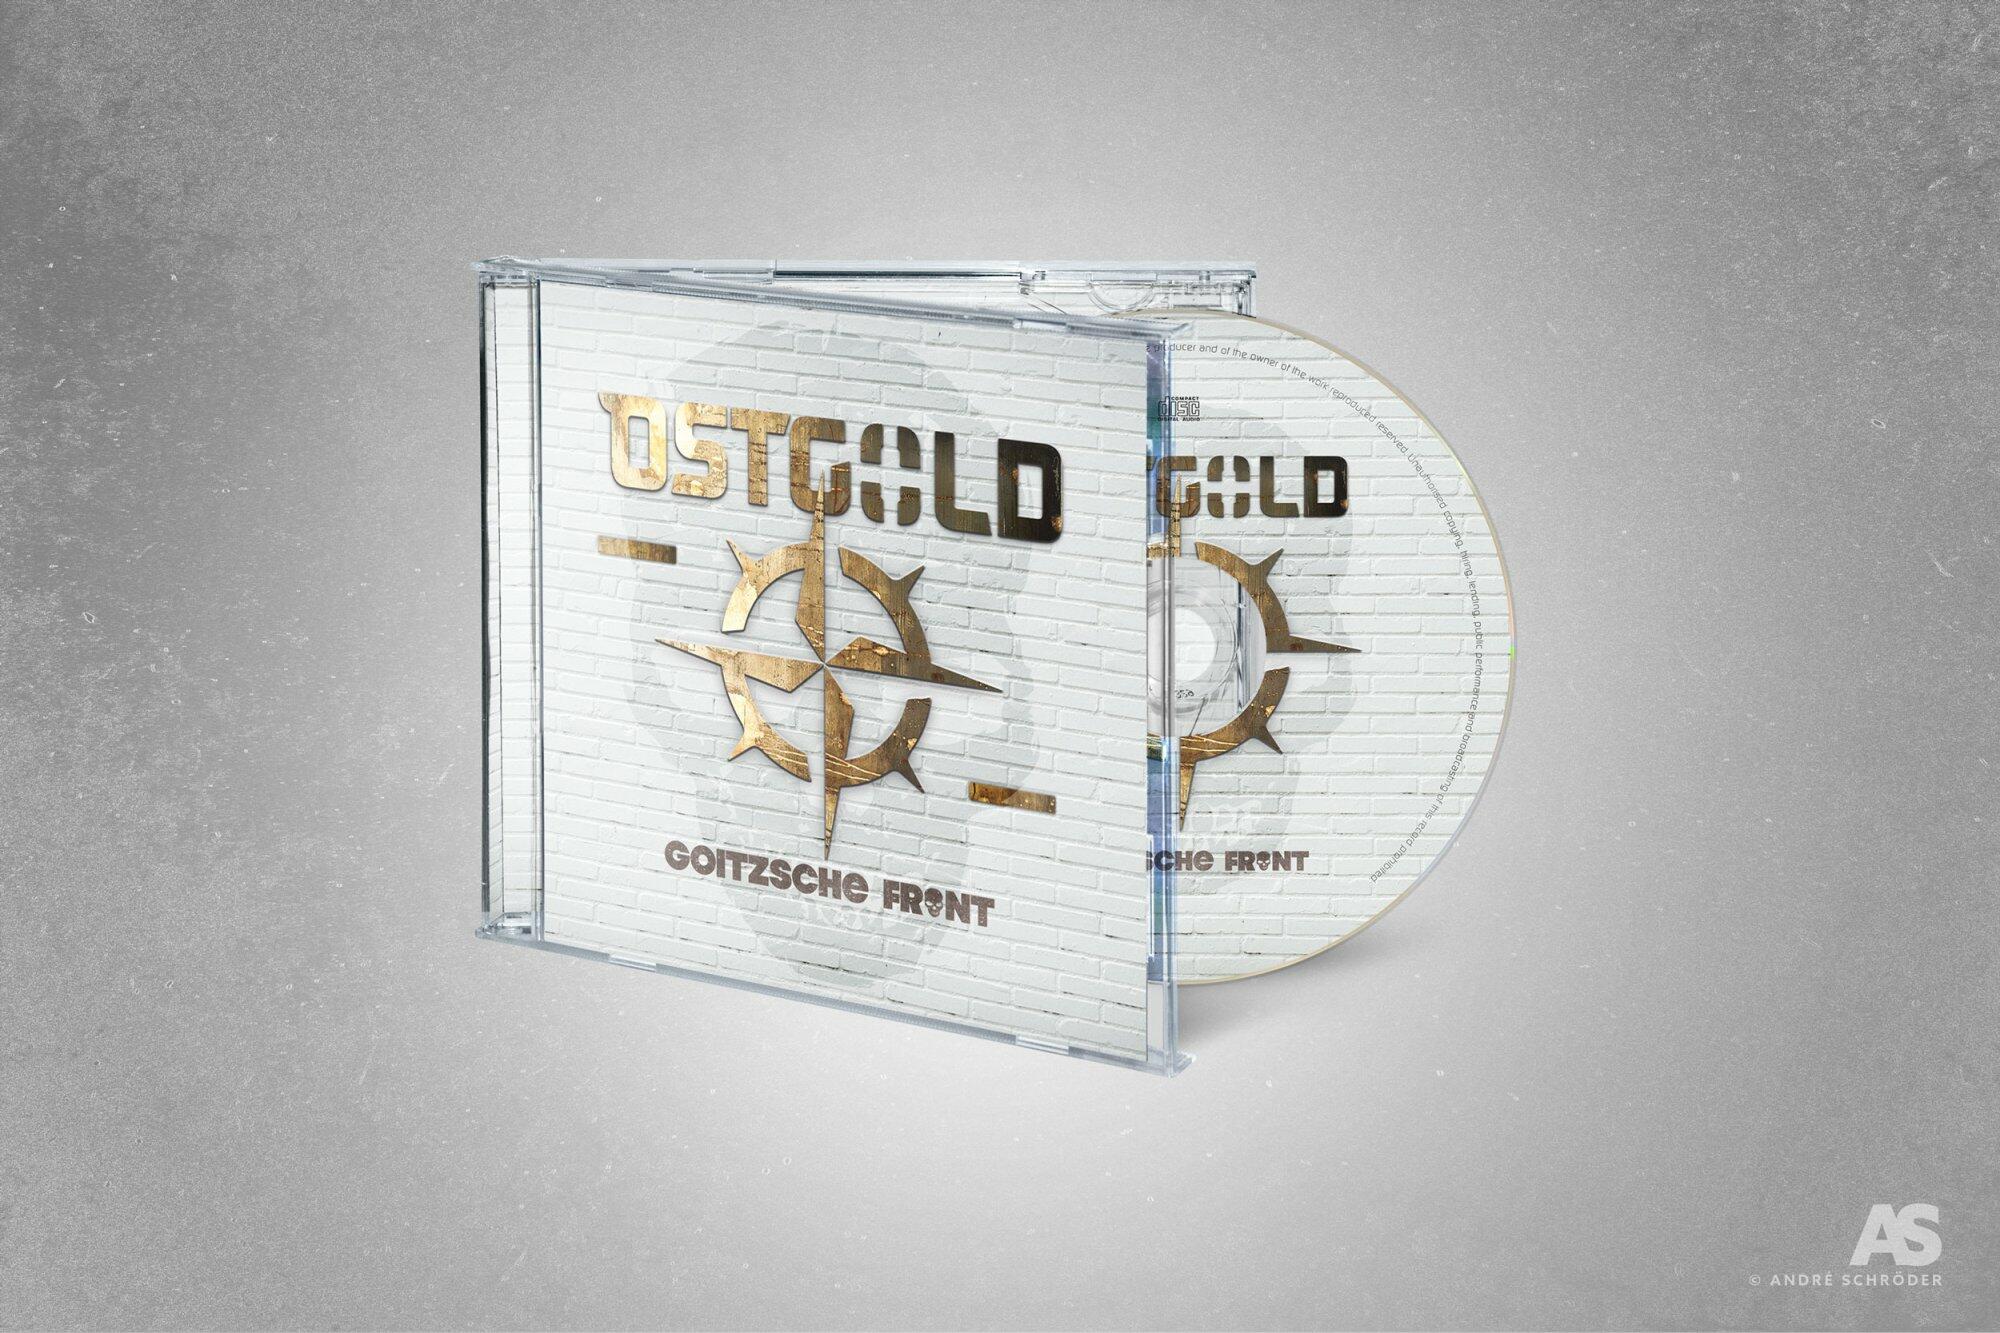 Goitzsche Front - Ostgold CD Jewel Case